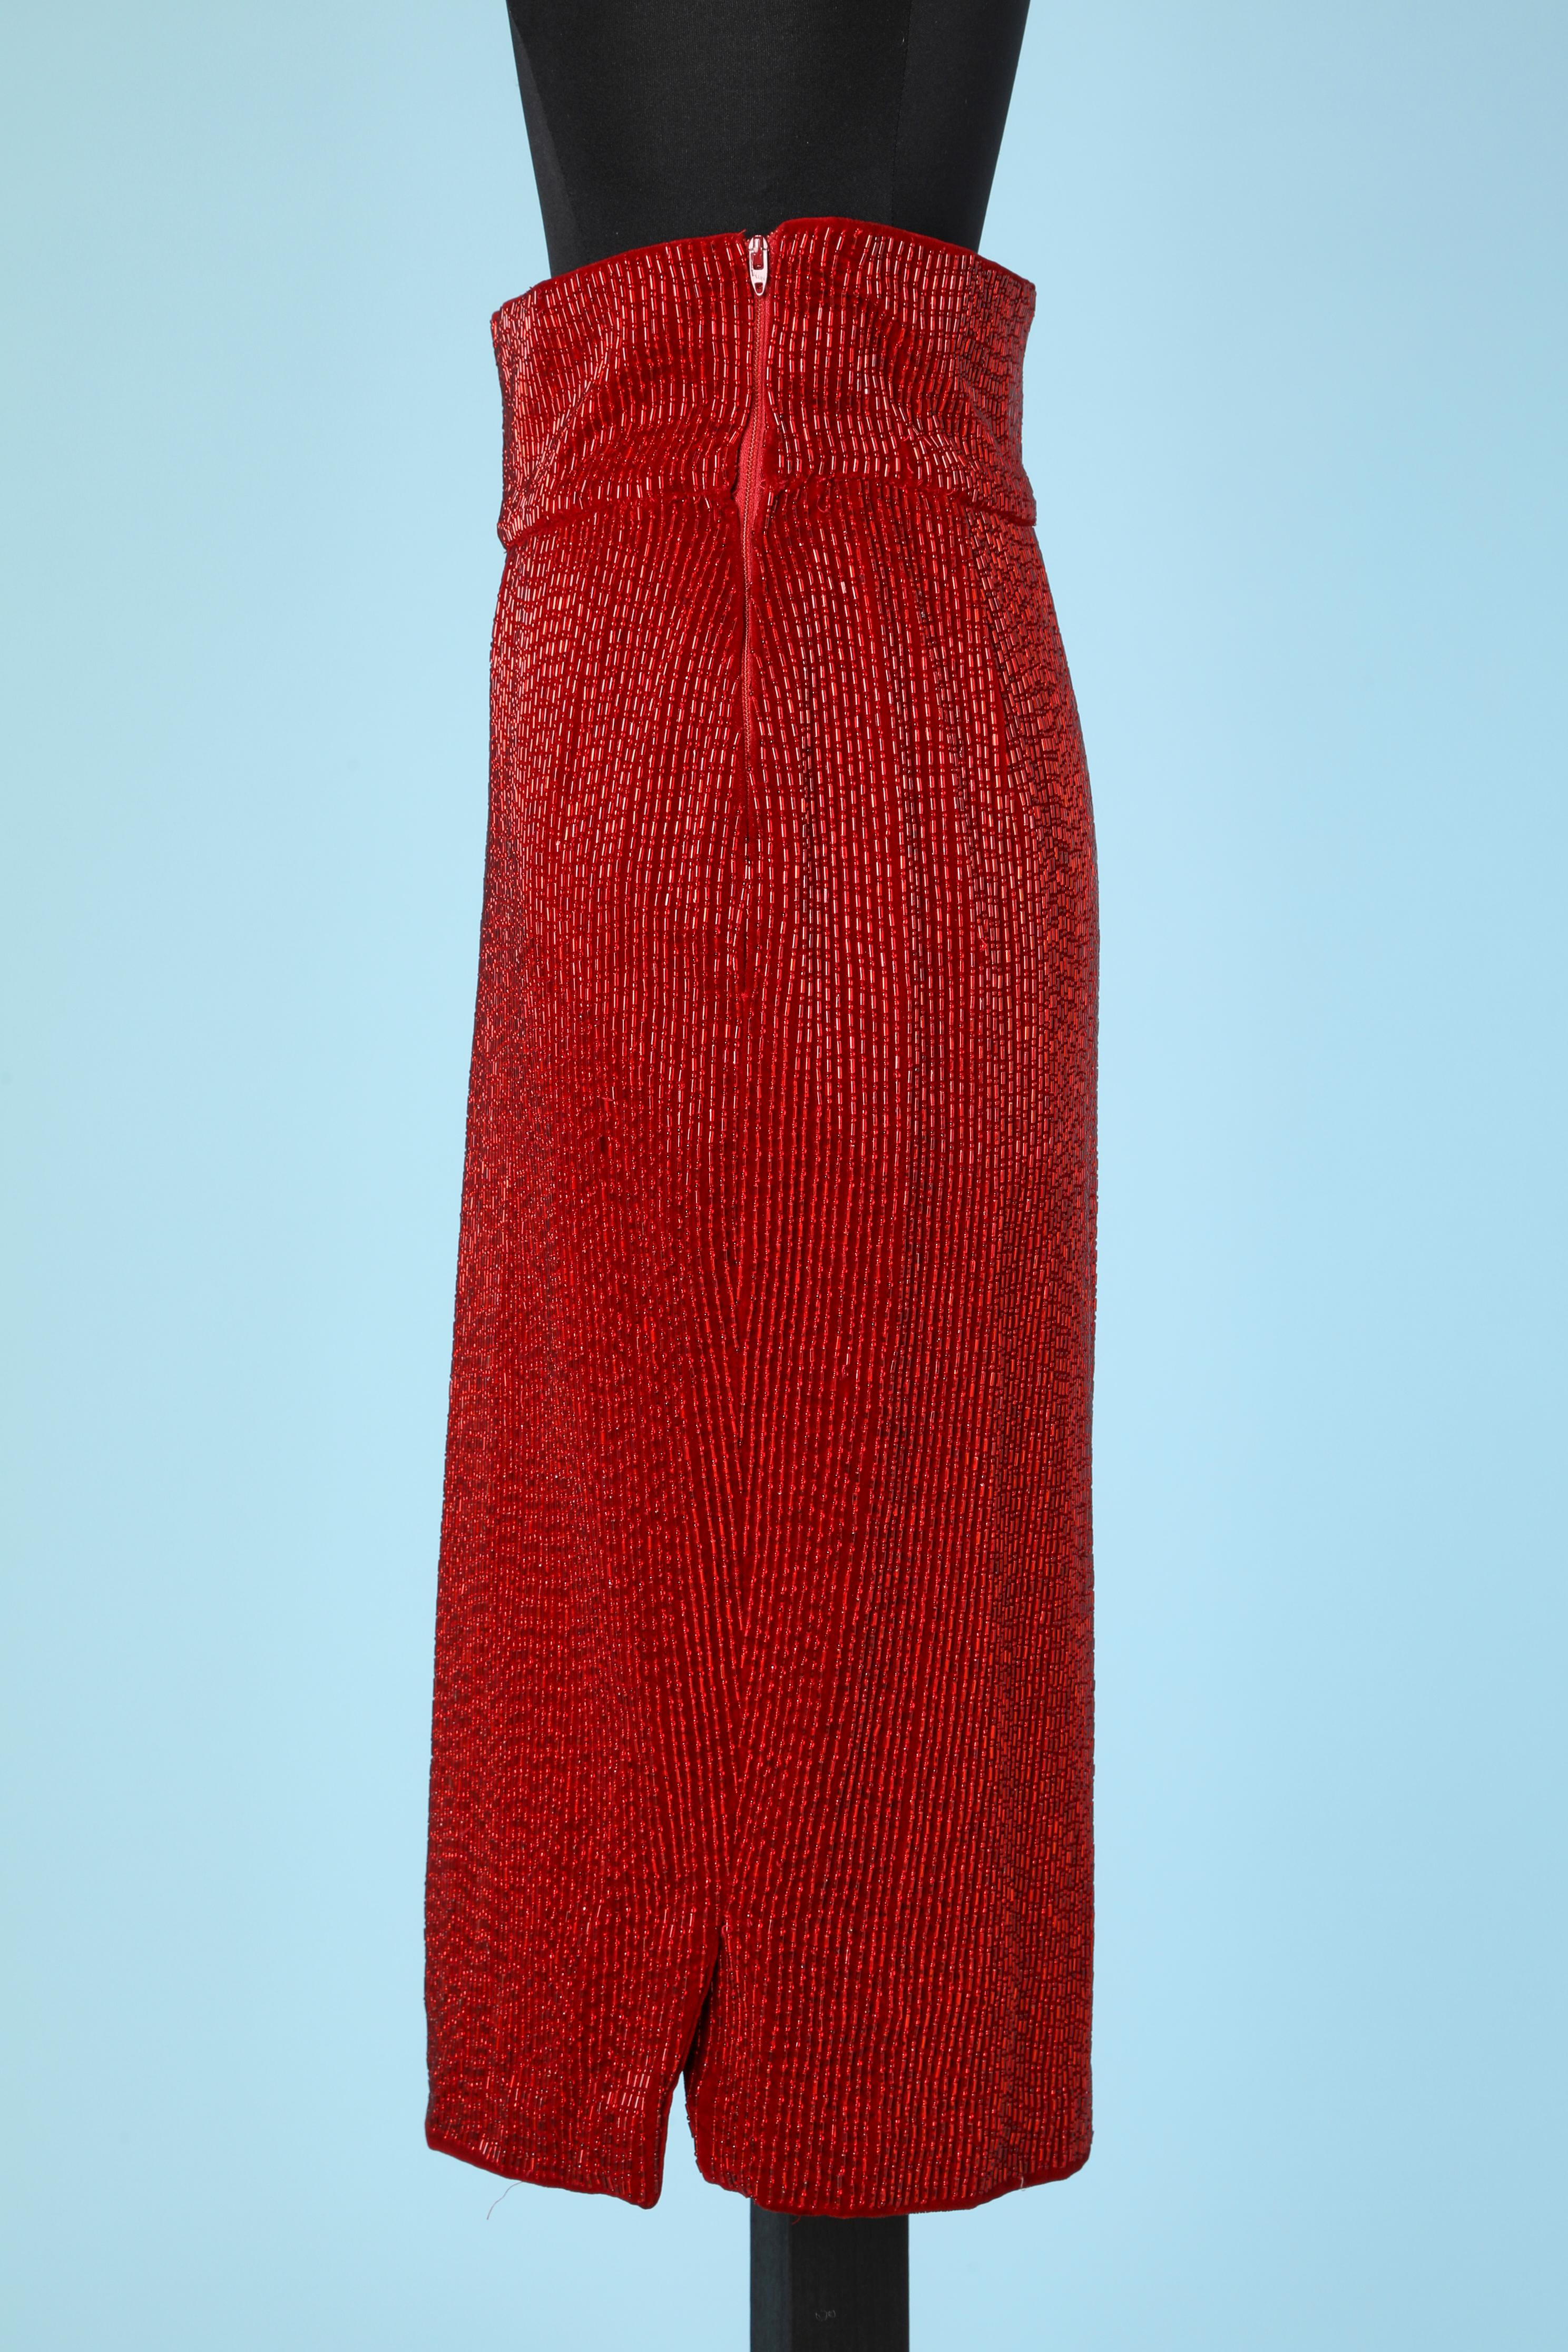 red beaded skirt